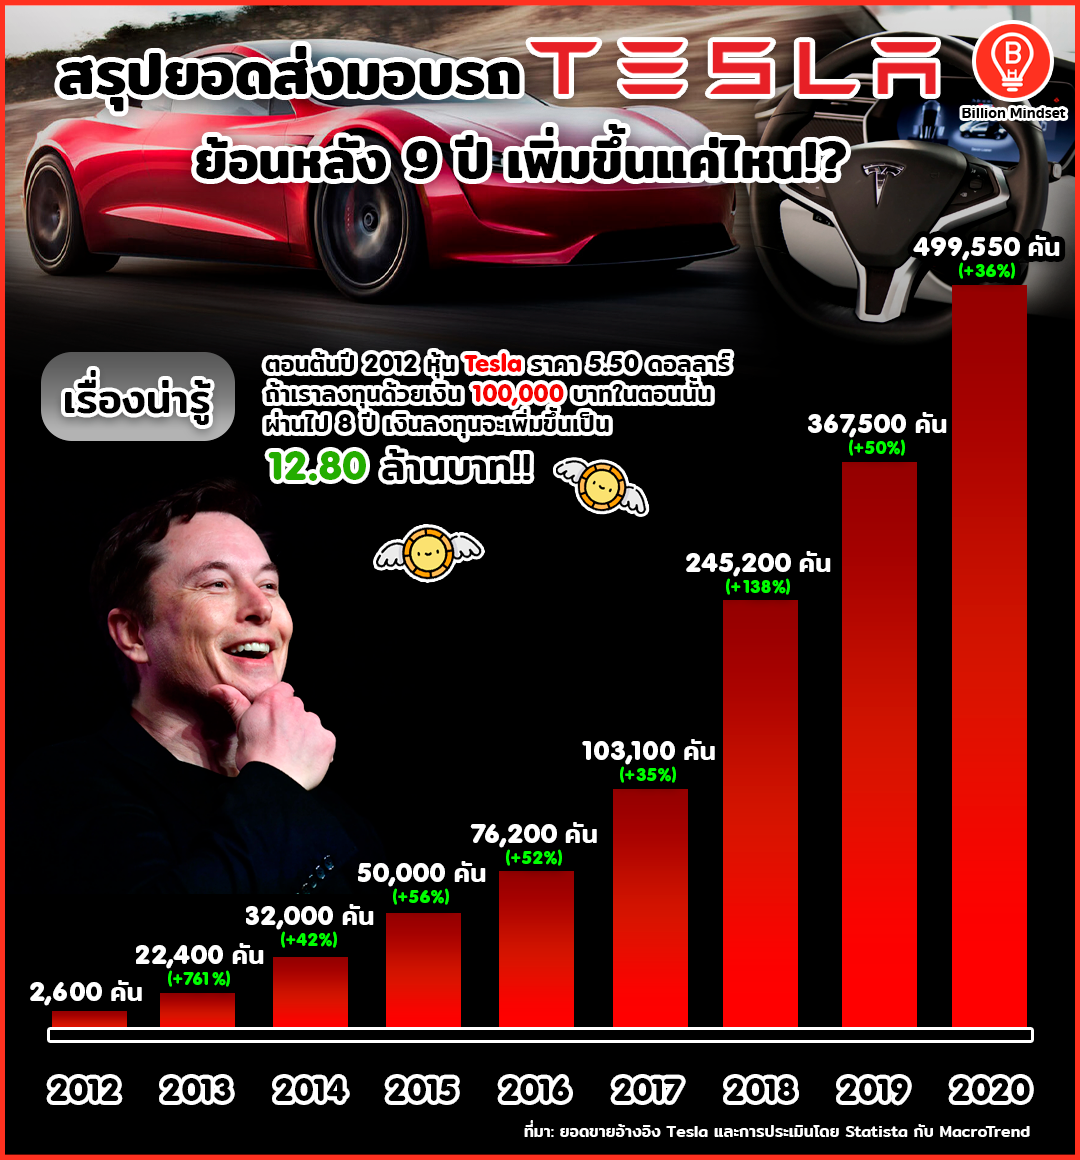 สรุปยอดขาย Tesla ตลอด 9 ปีที่ผ่านมา เติบโตขึ้นมากแค่ไหน!?